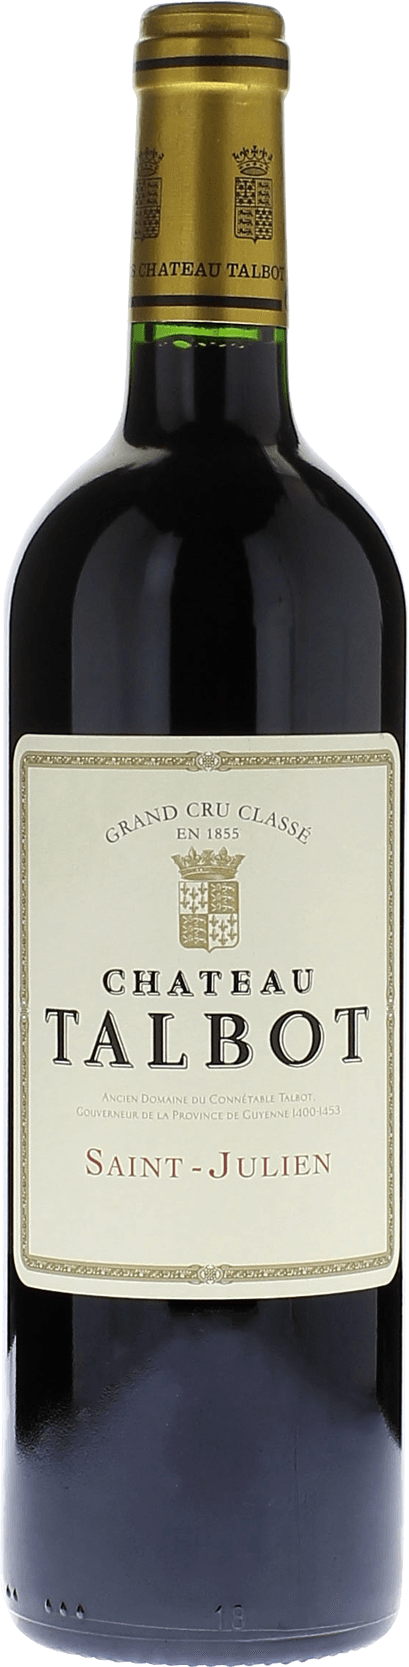 Talbot mise negoce 1955 4me Grand cru class Saint-Julien, Bordeaux rouge